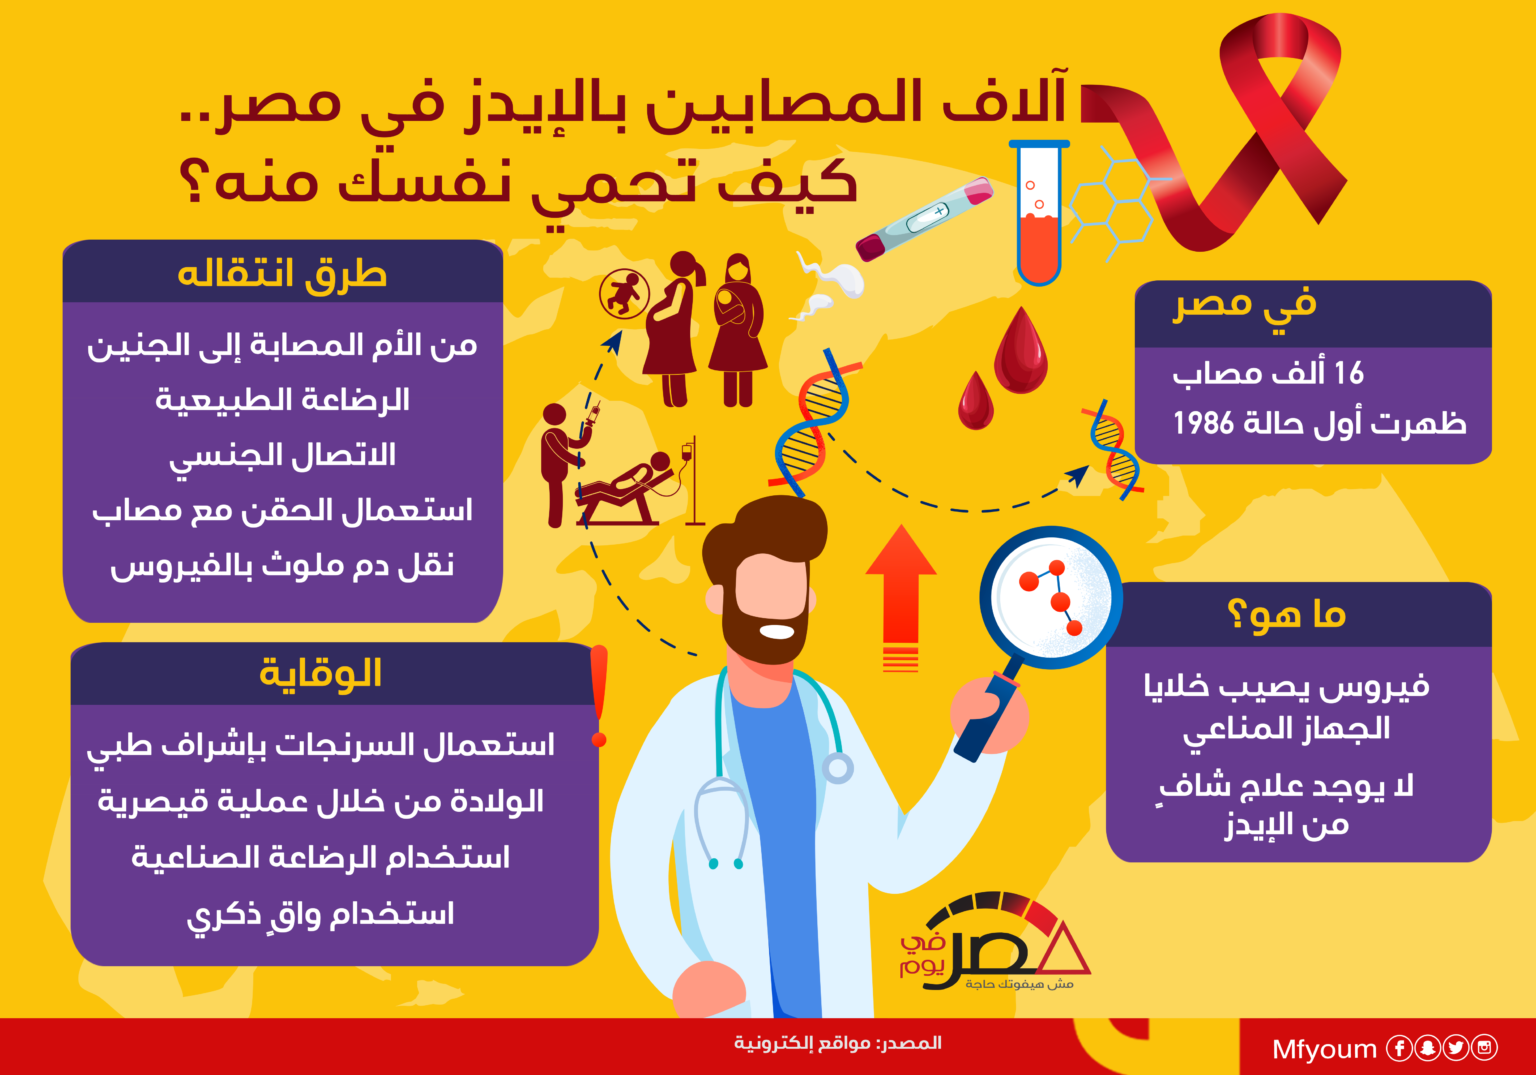 آلاف المصابين بالإيدز في مصر.. كيف تحمي نفسك؟ (إنفوجراف)